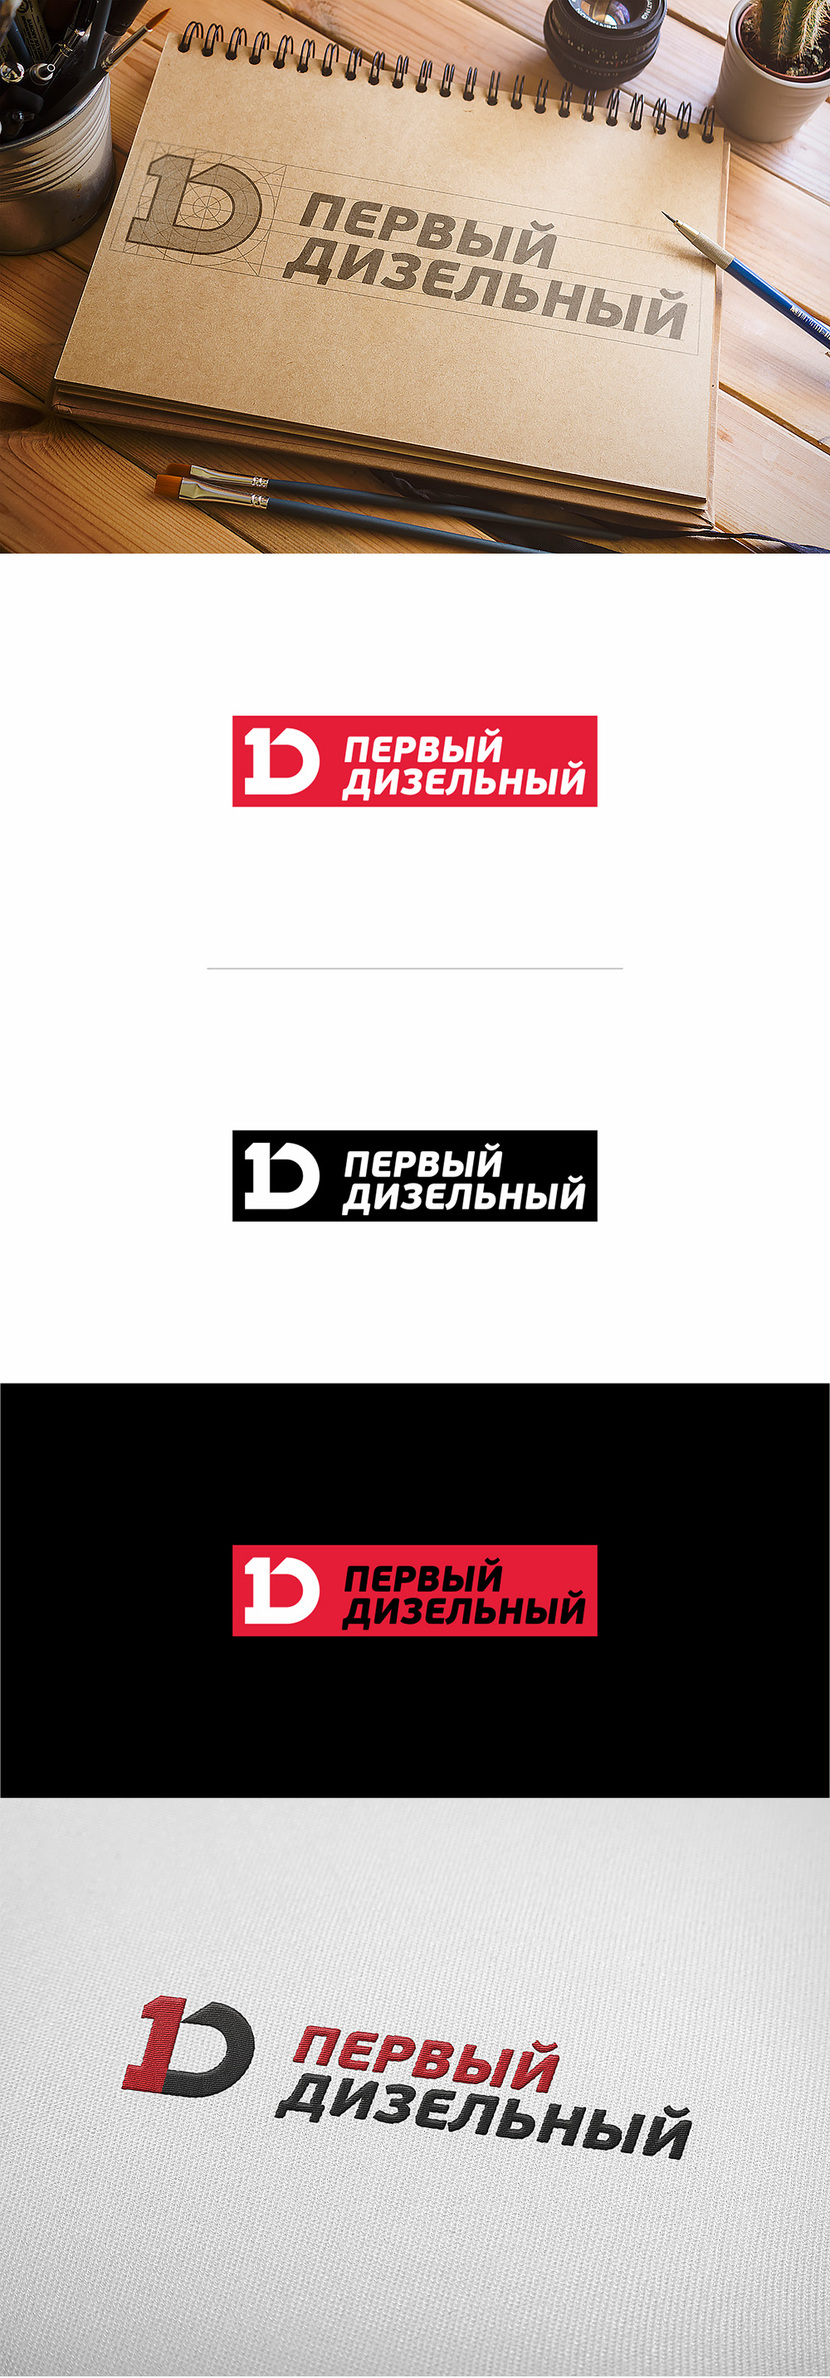 + - Фирменный стиль и логотип для сети автосервисов